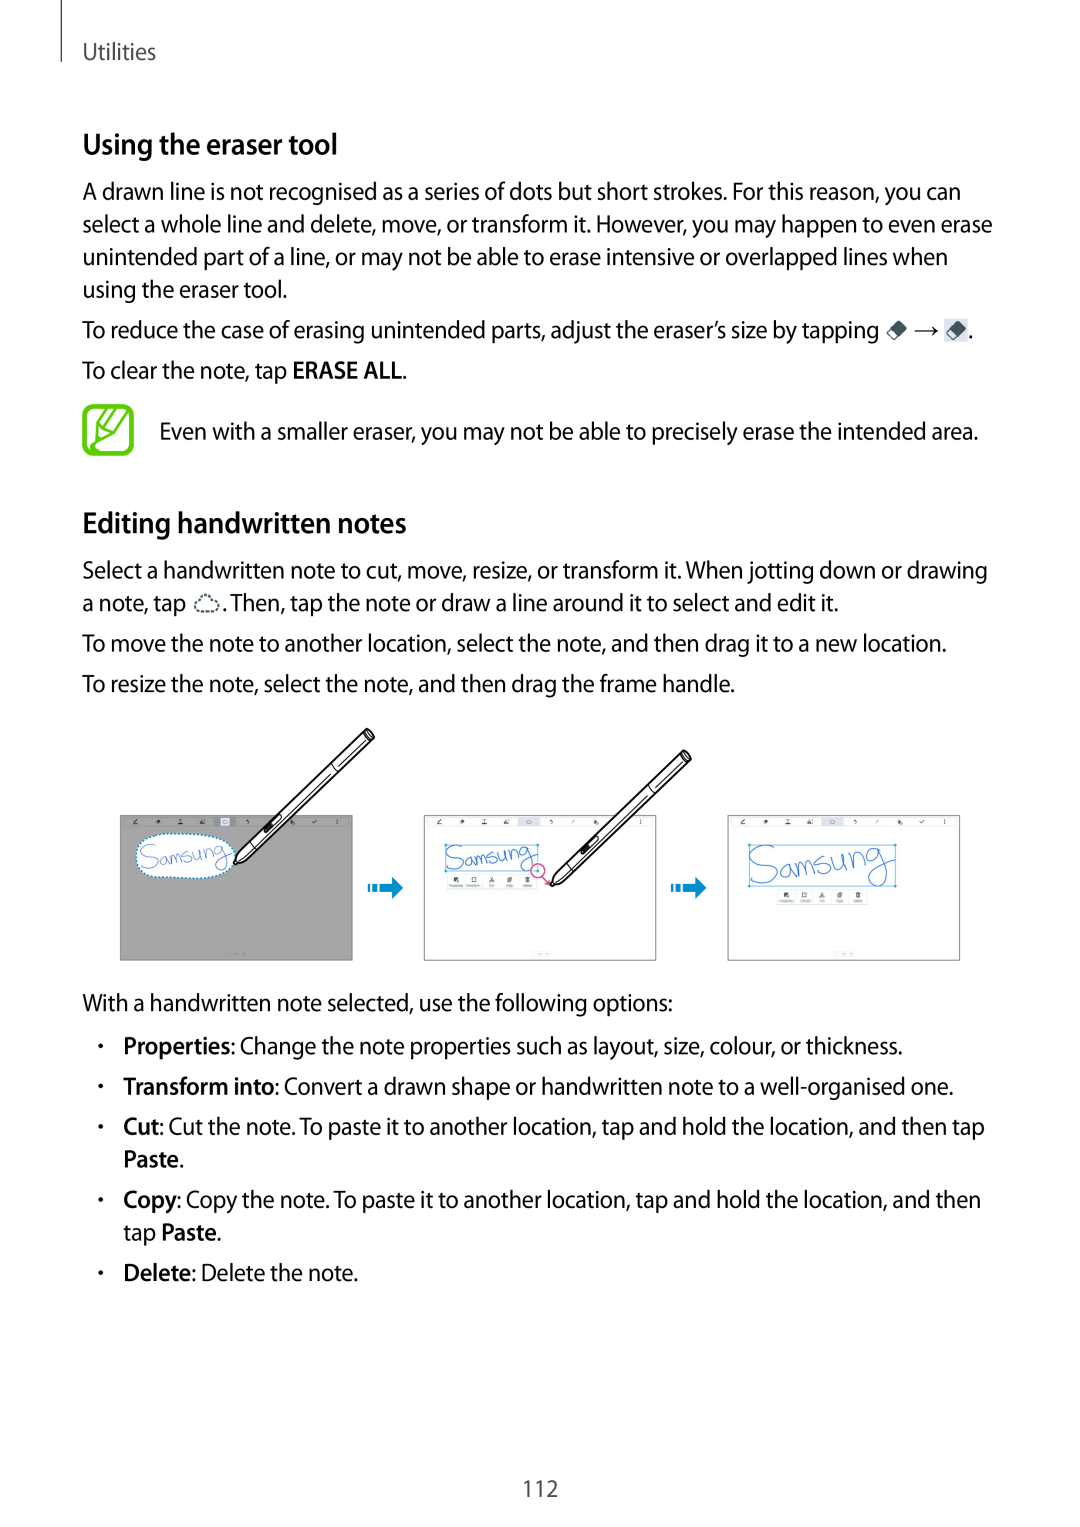 Samsung SM-P9000ZKYEUR, SM-P9000ZWAATO, SM-P9000ZKAXEO manual Using the eraser tool, Editing handwritten notes, Utilities 